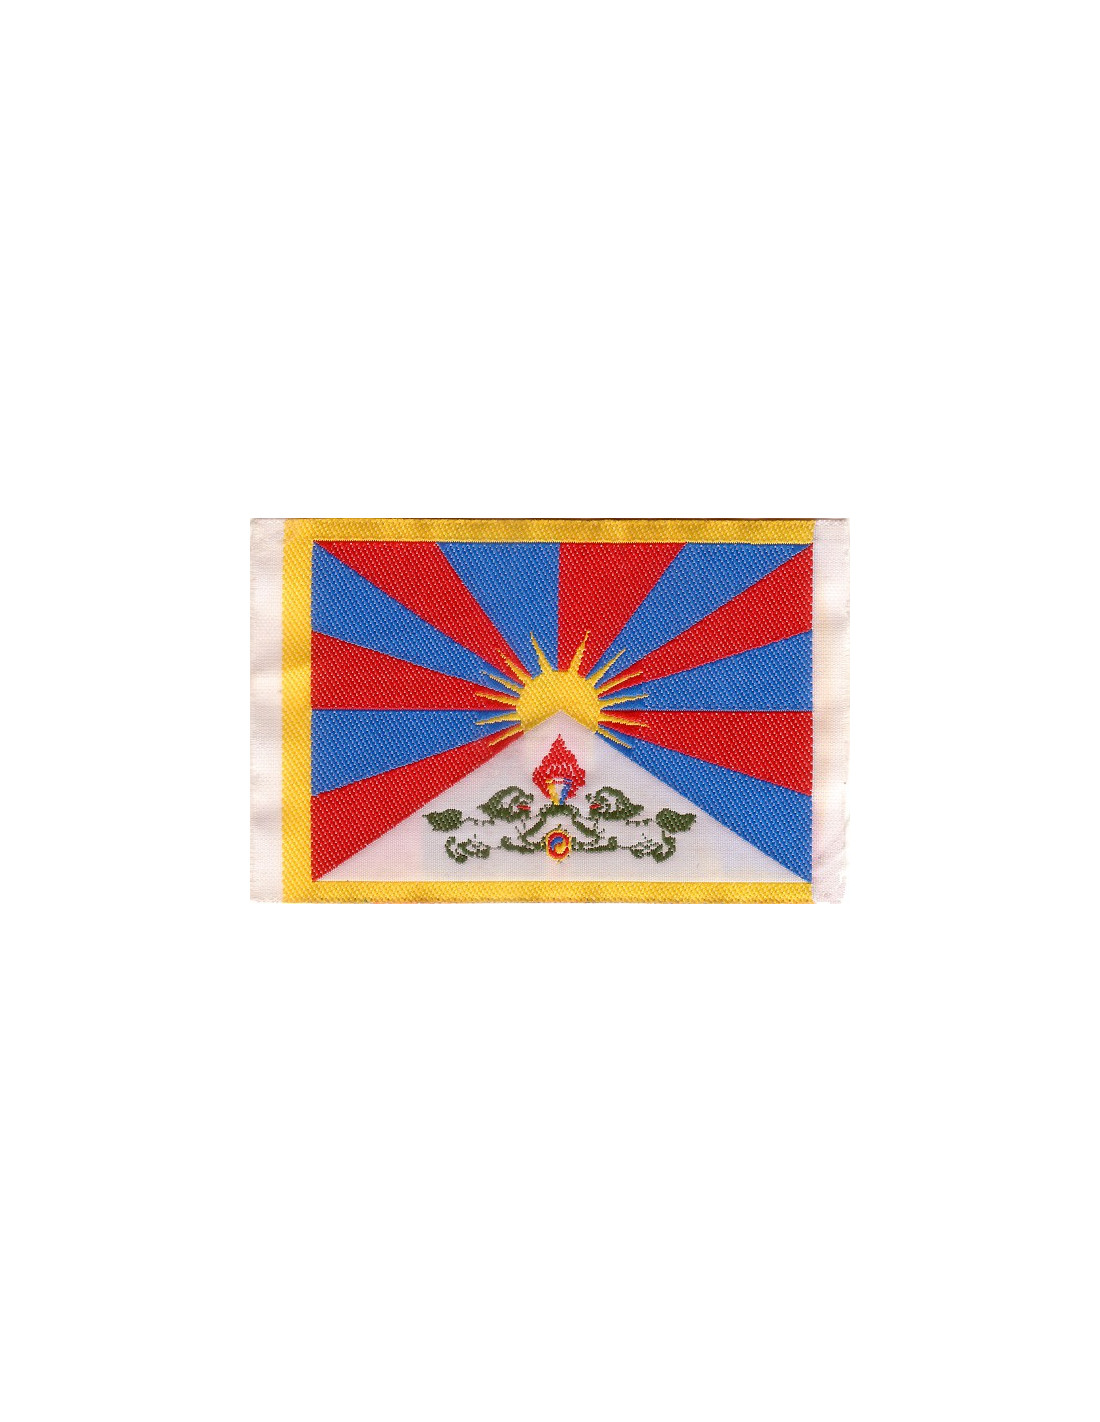 https://www.la-boutique-militante.com/2383-thickbox_default/ecusson-drapeau-tibetain.jpg